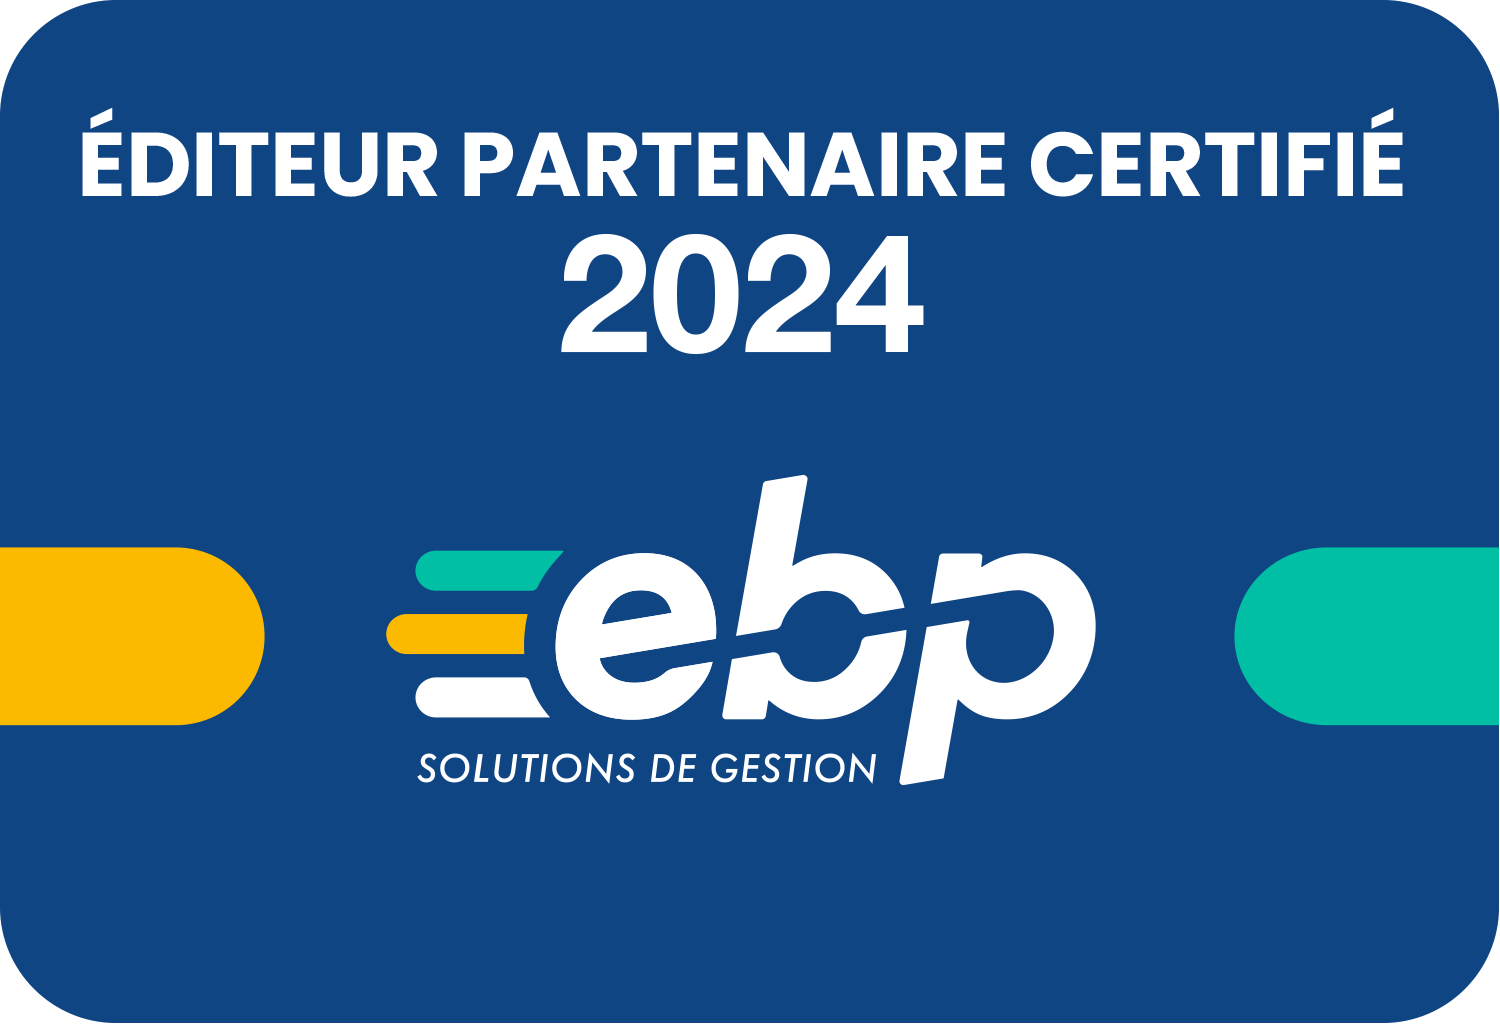 Éditeur Partenaire CERTIFIÉ 2024 - Logiciel EBP, ACE distributeur revendeur certifié centre expert Gold 974